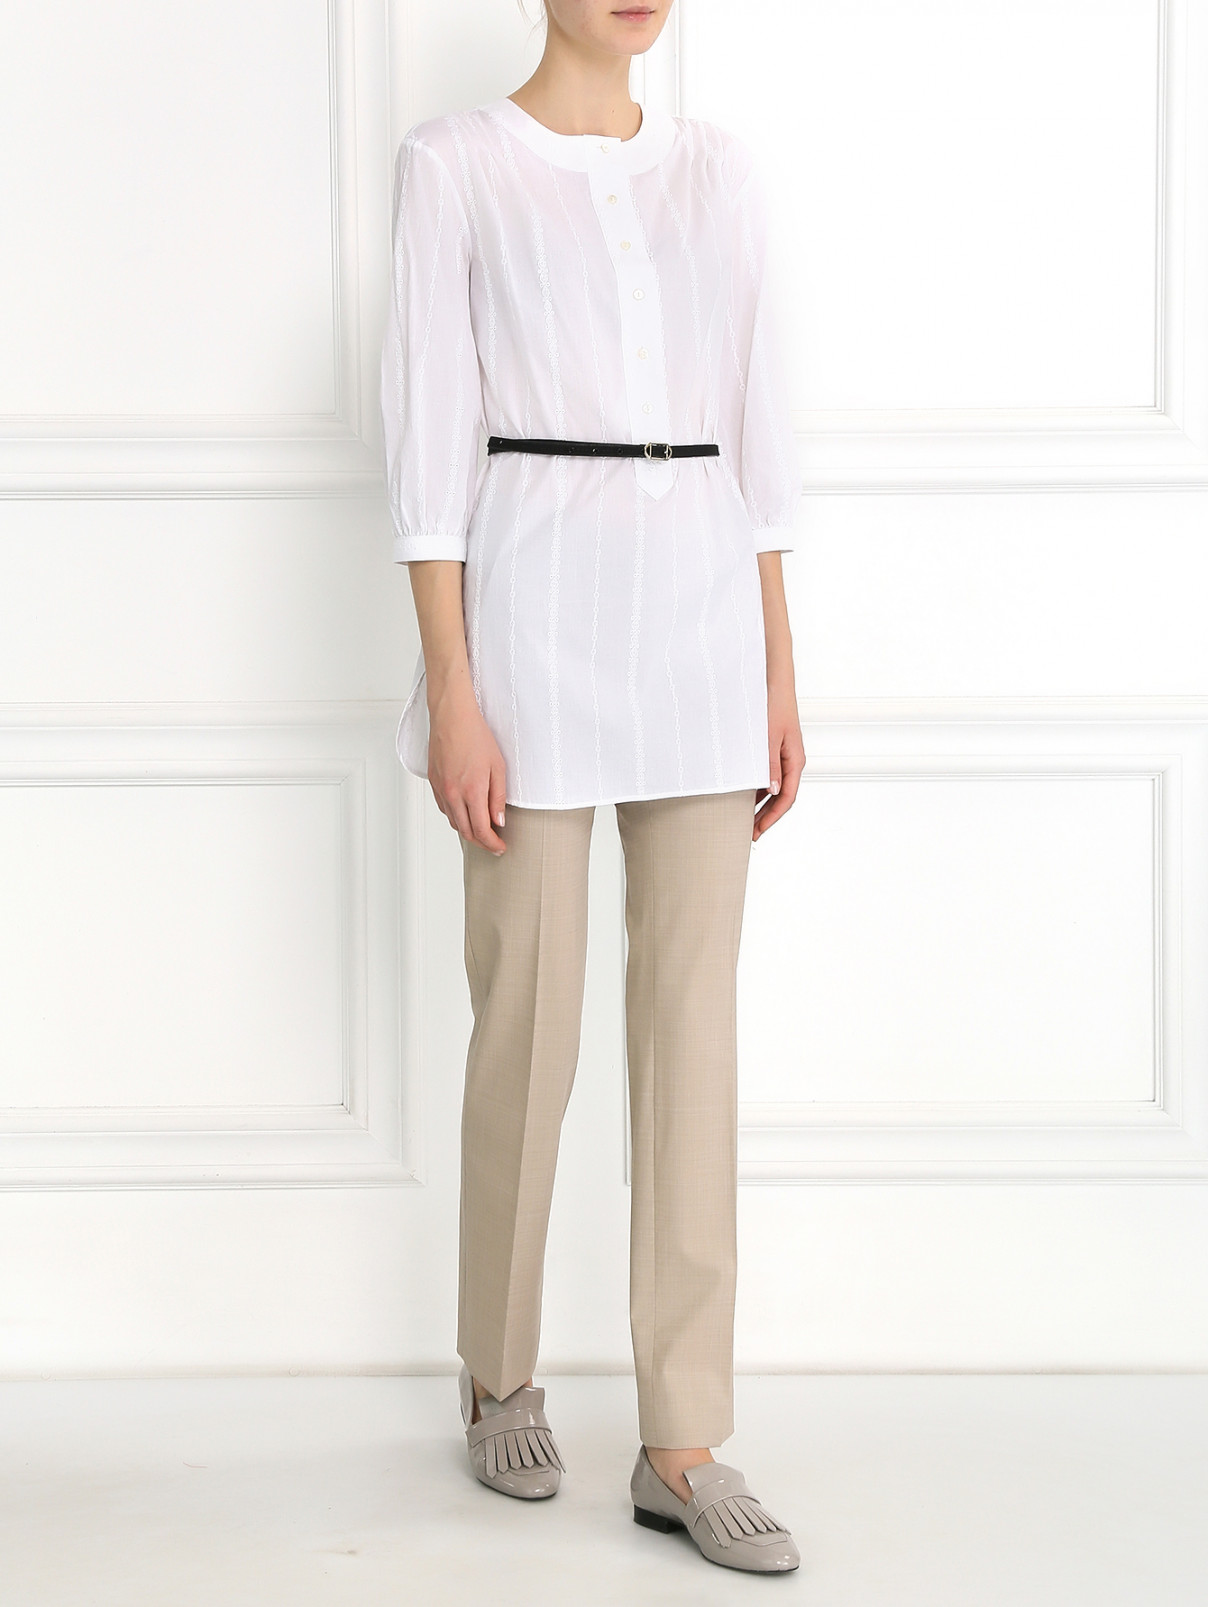 Удлиненная блуза из хлопка с вышивкой Brooks Brothers  –  Модель Общий вид  – Цвет:  Белый